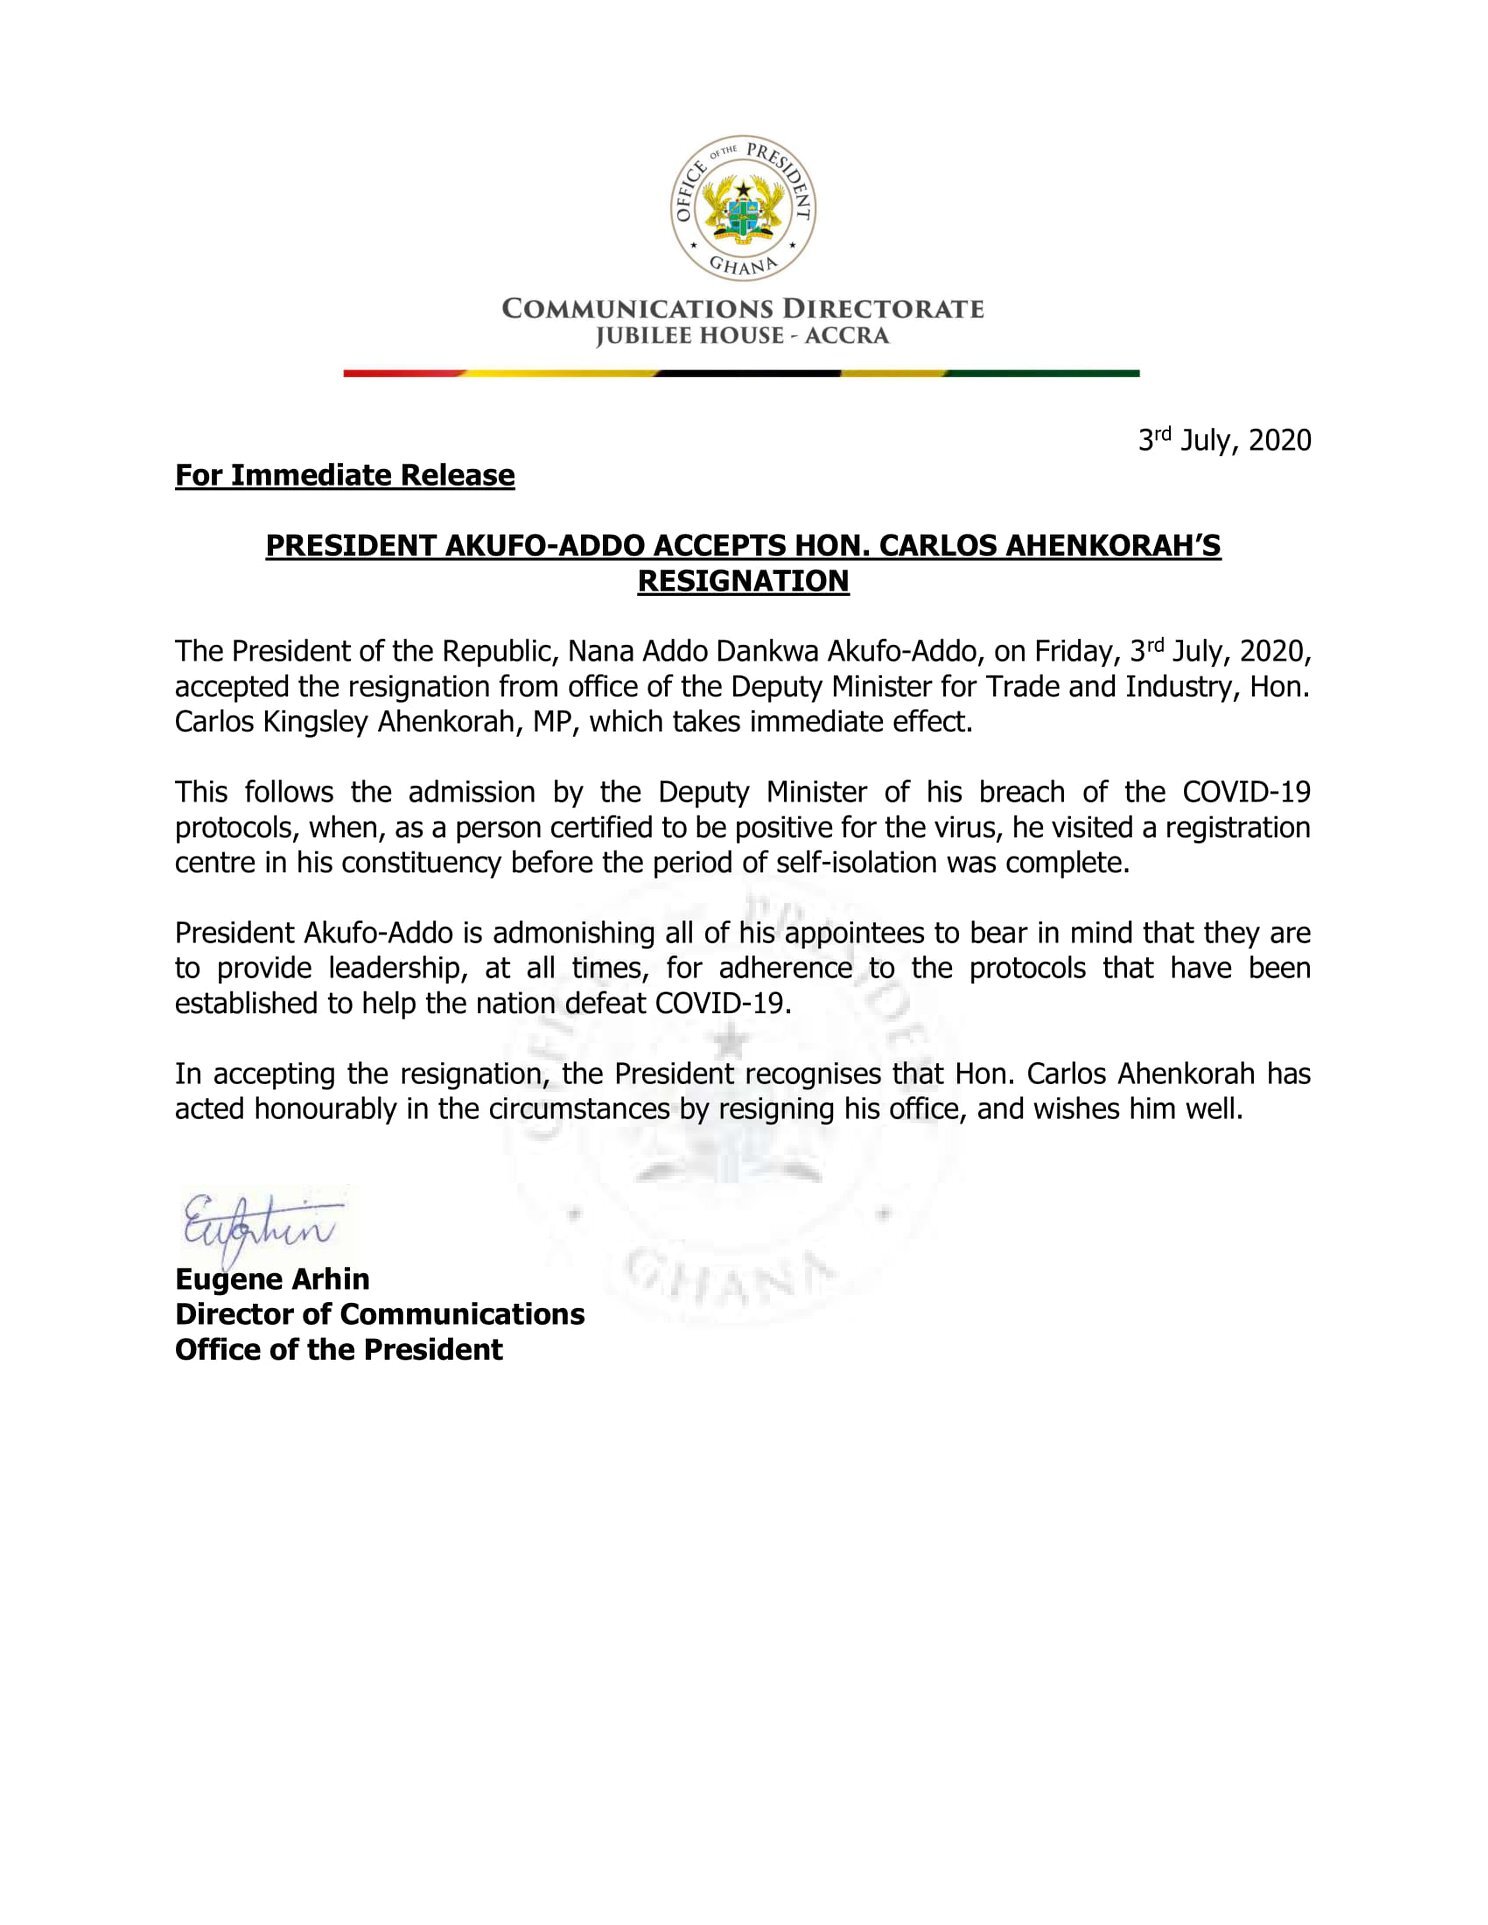 Breaking: Carlos Ahenkorah resigns after Akufo-Addo's orders